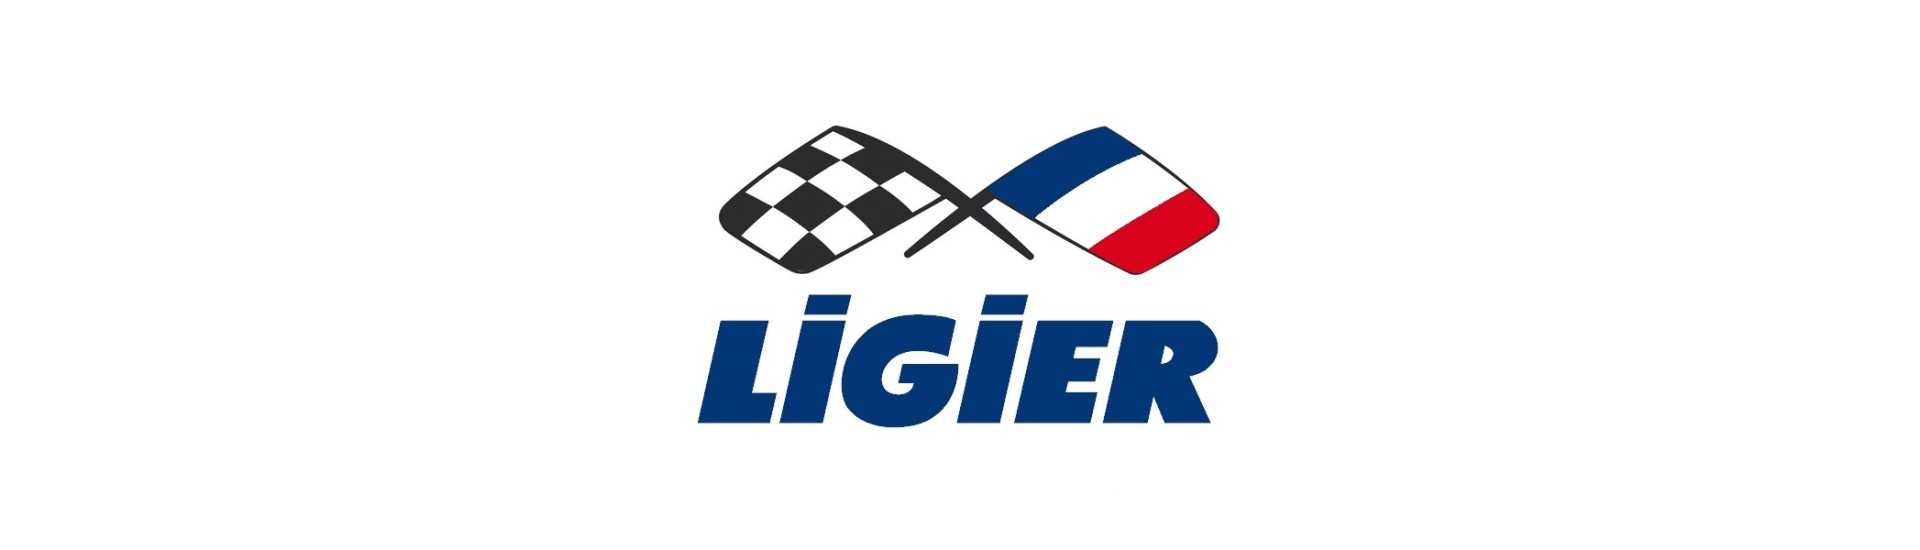 Geschwindigkeitsverringer zum besten Preis für Auto ohne Lizenz Ligier